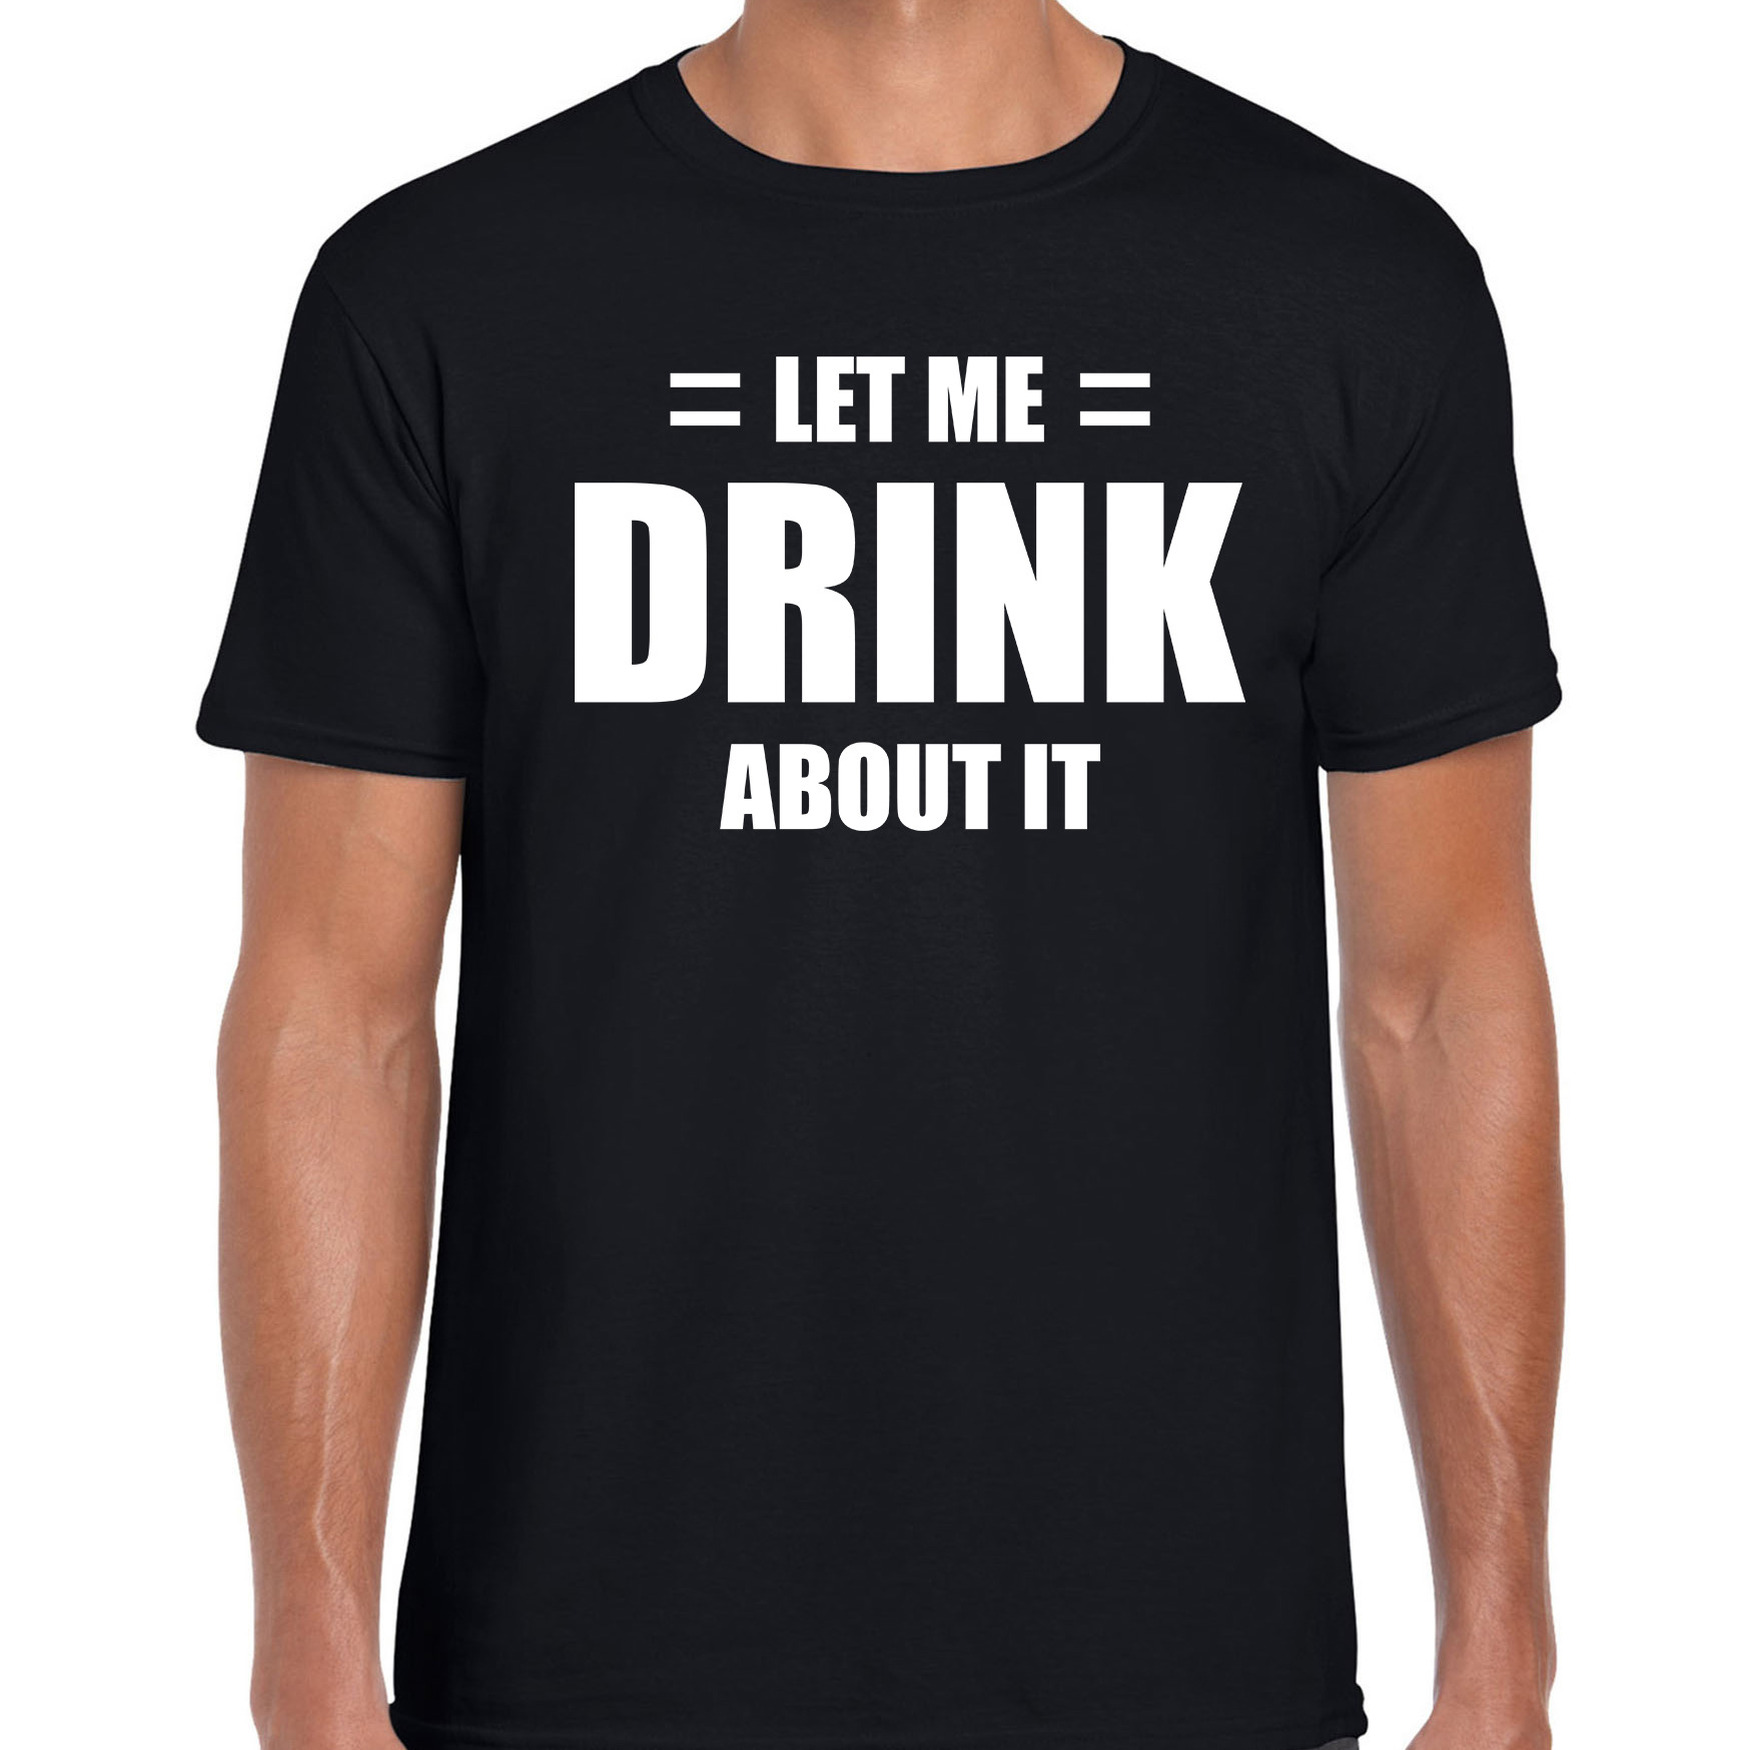 Let me drink about it-Laat me er over drinken drank fun t-shirt zwart voor heren